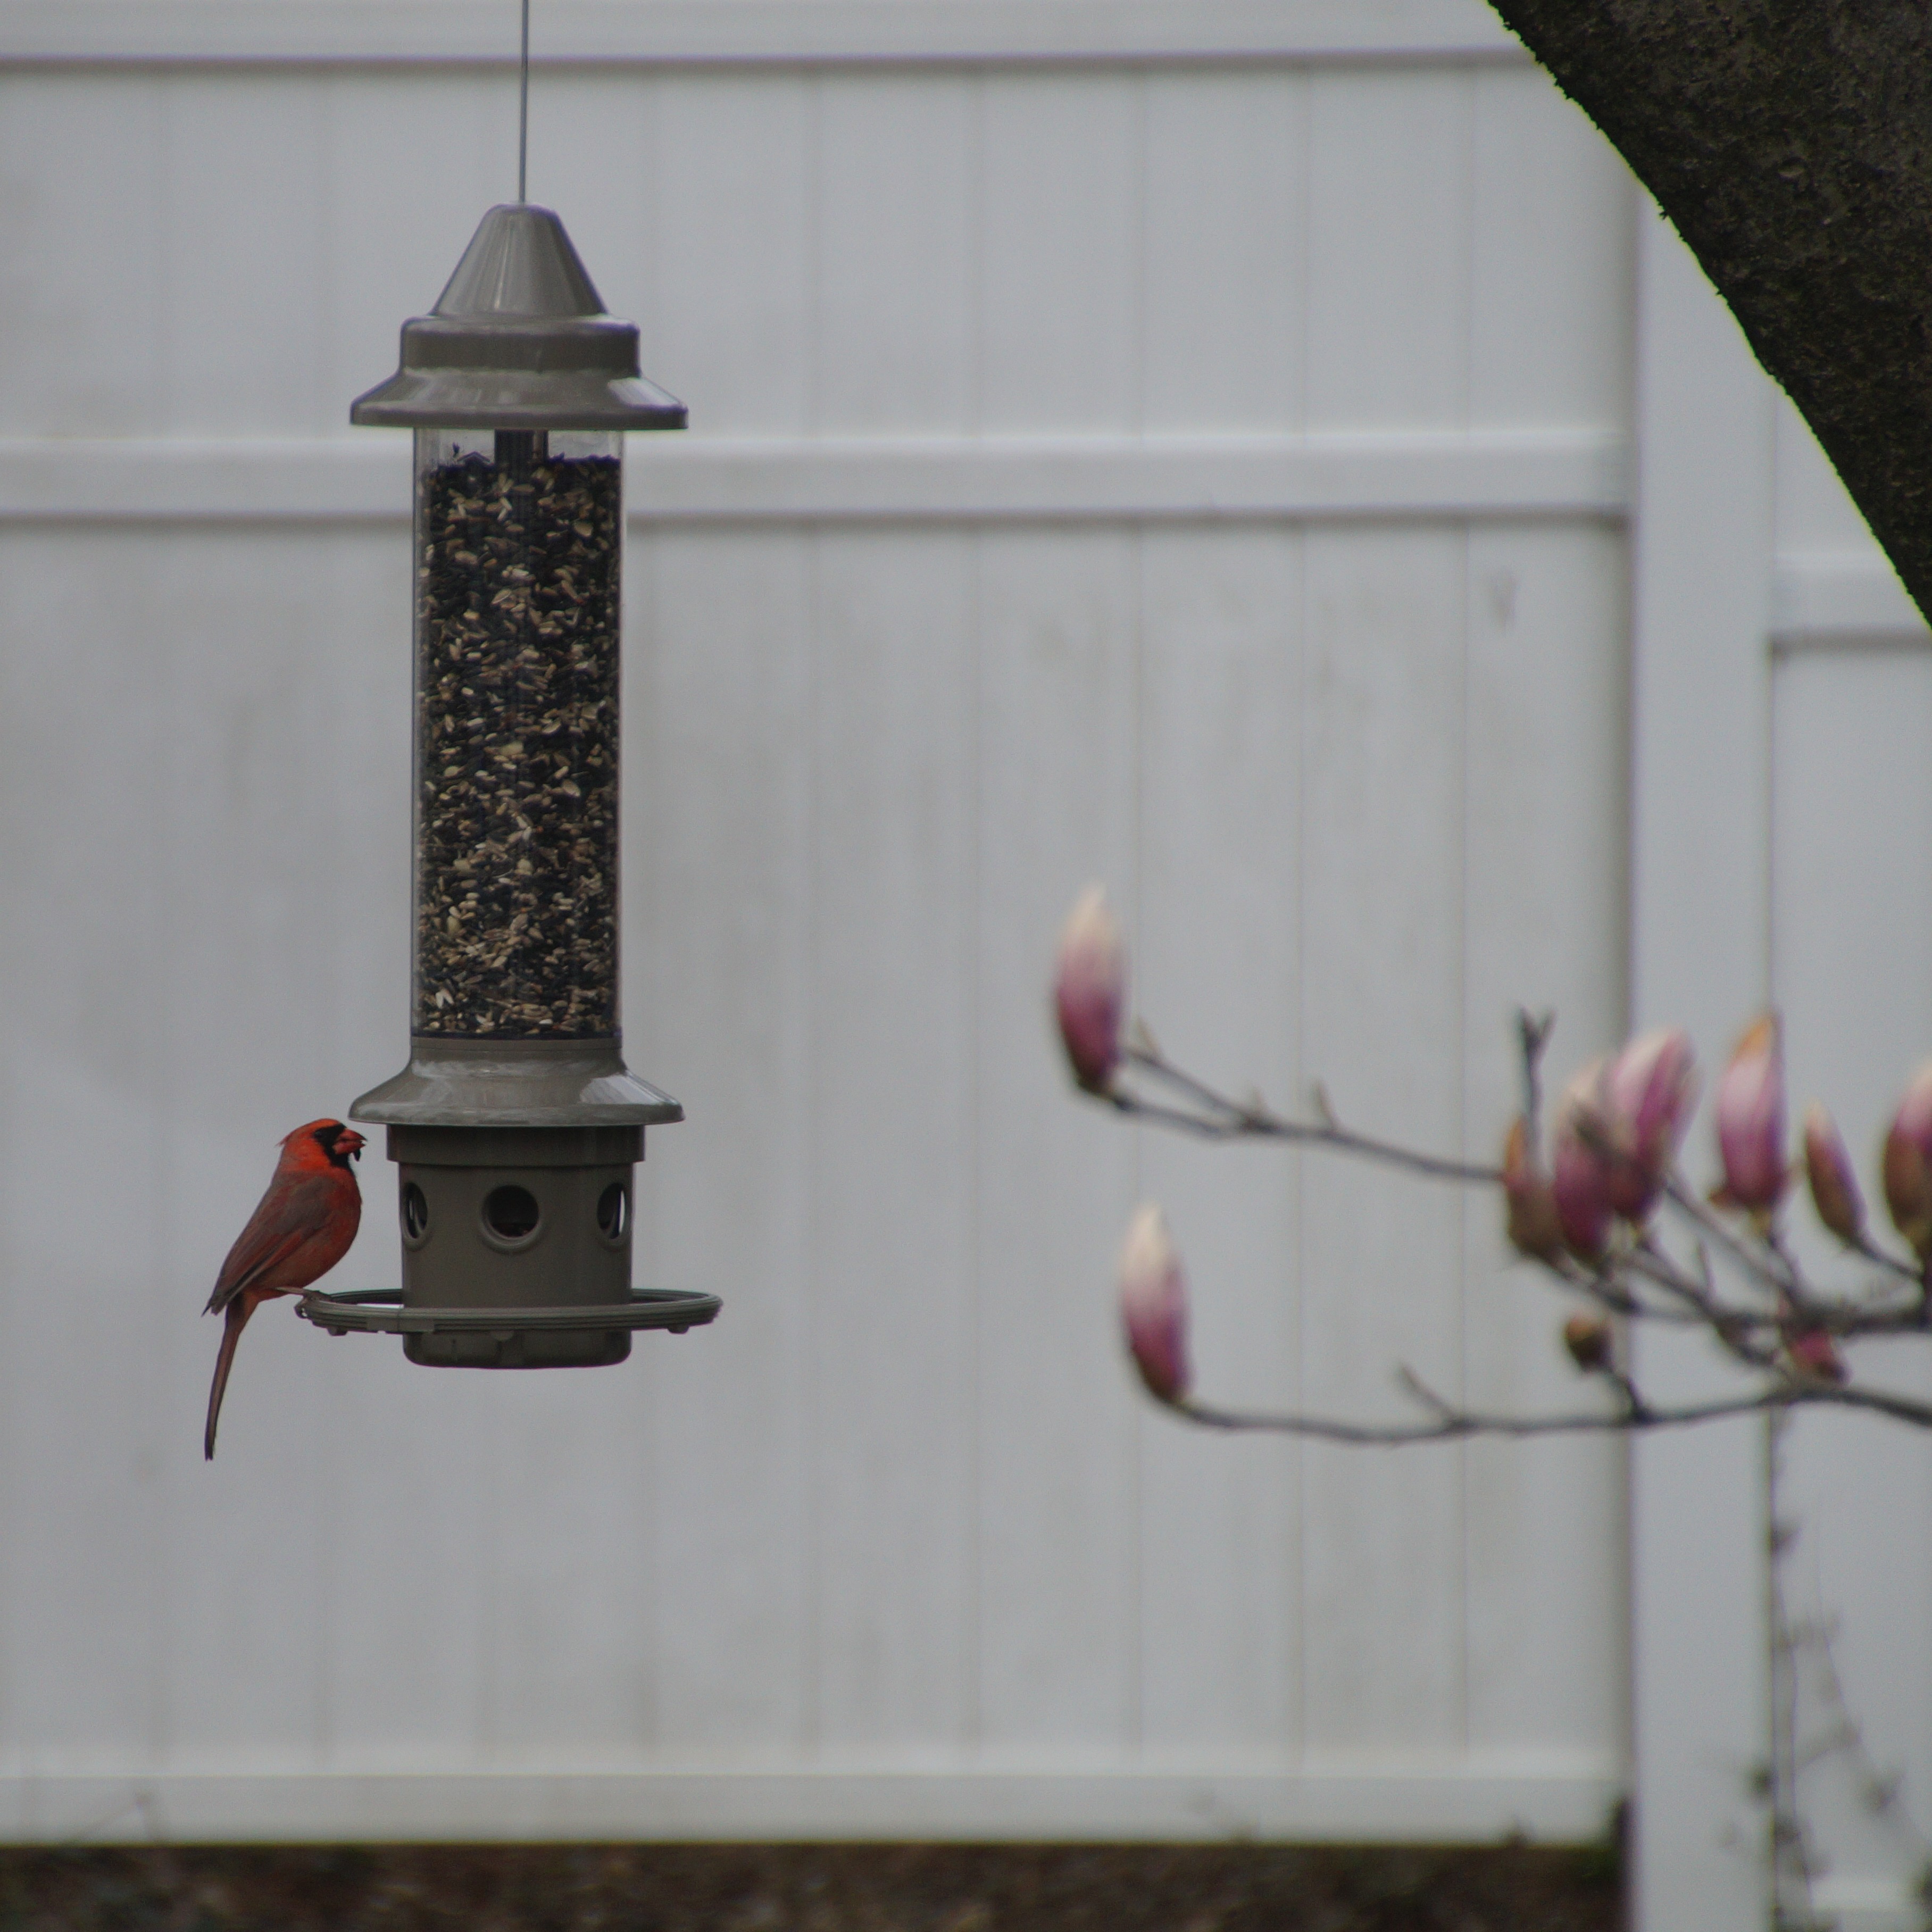 A cardinal in my backyard